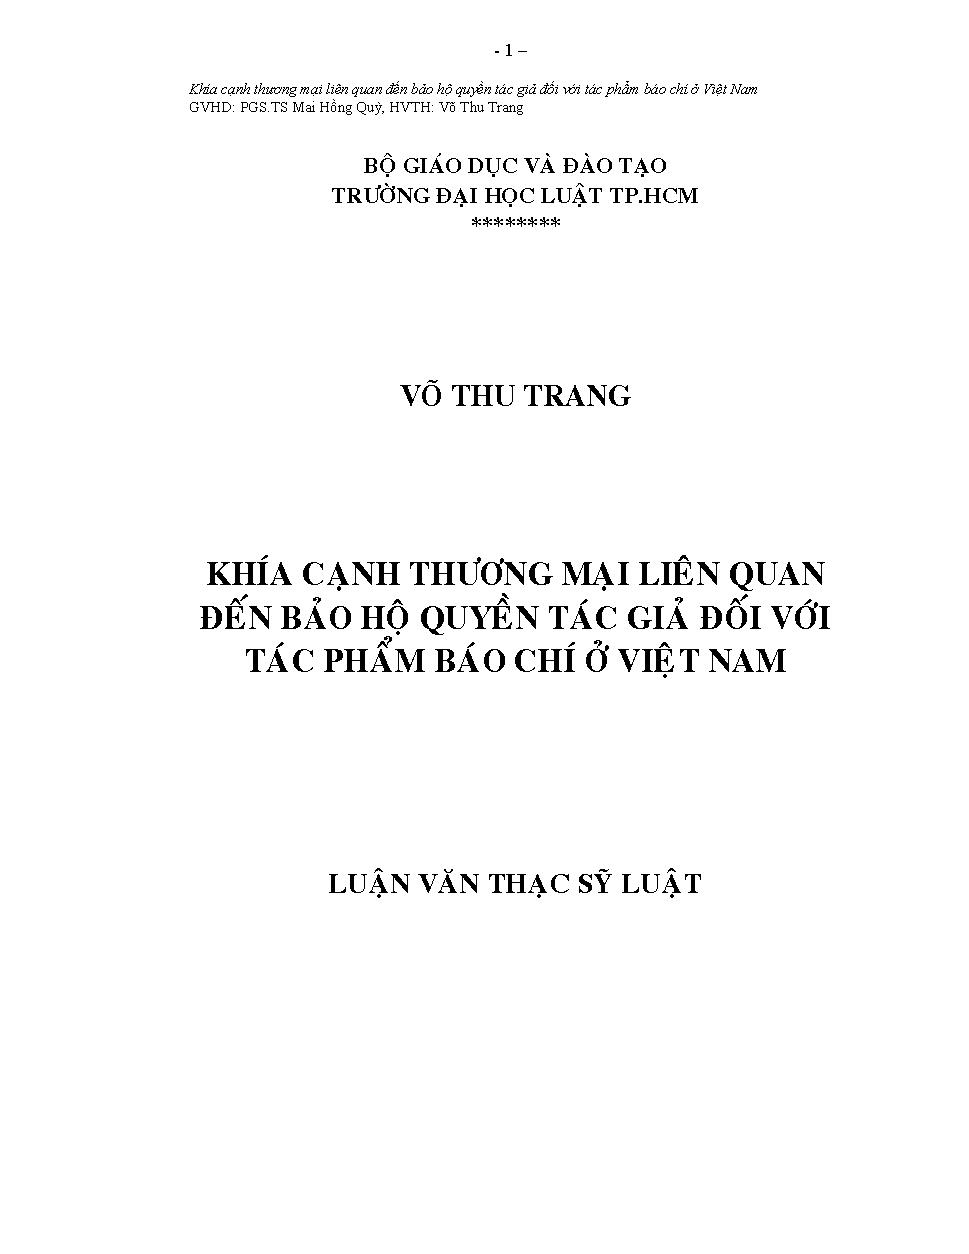 Khía cạnh thương mại liên quan đến bảo hộ quyền tác giả đối với tác phẩm báo chí ở Việt Nam